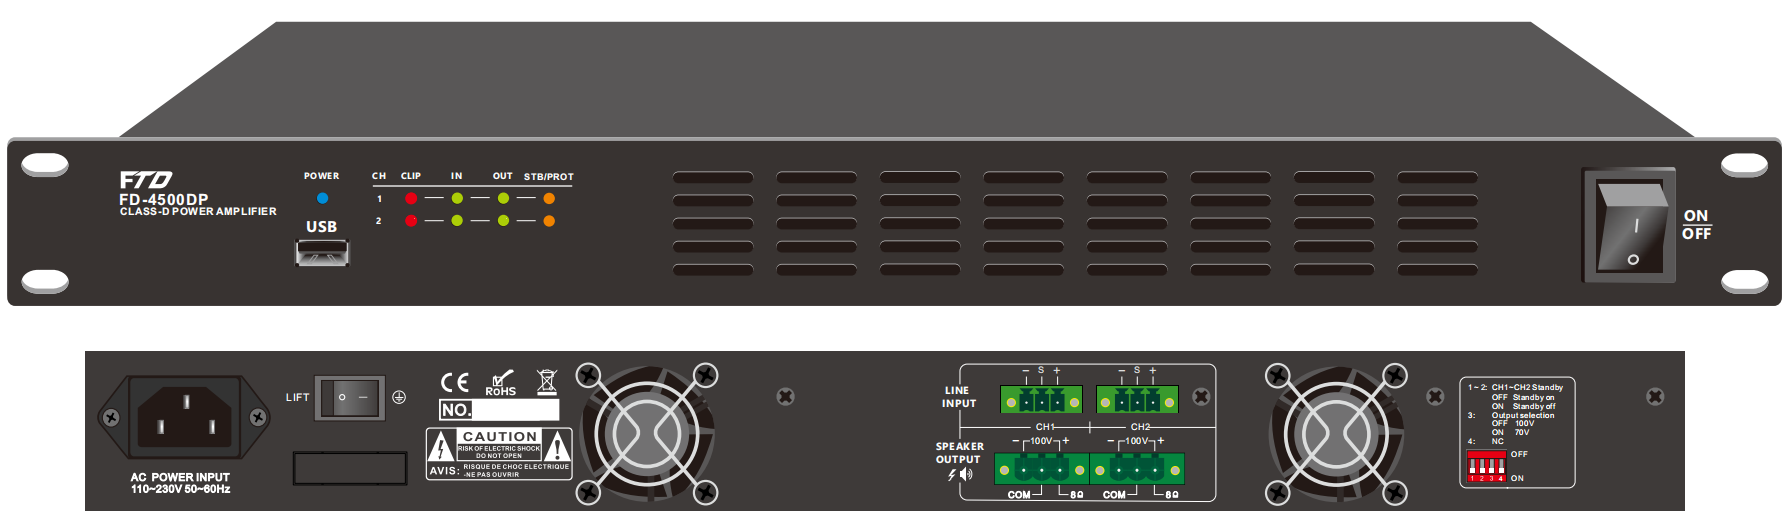 FD-2350DP 2CH 350W Class-D Amplifier with DSP